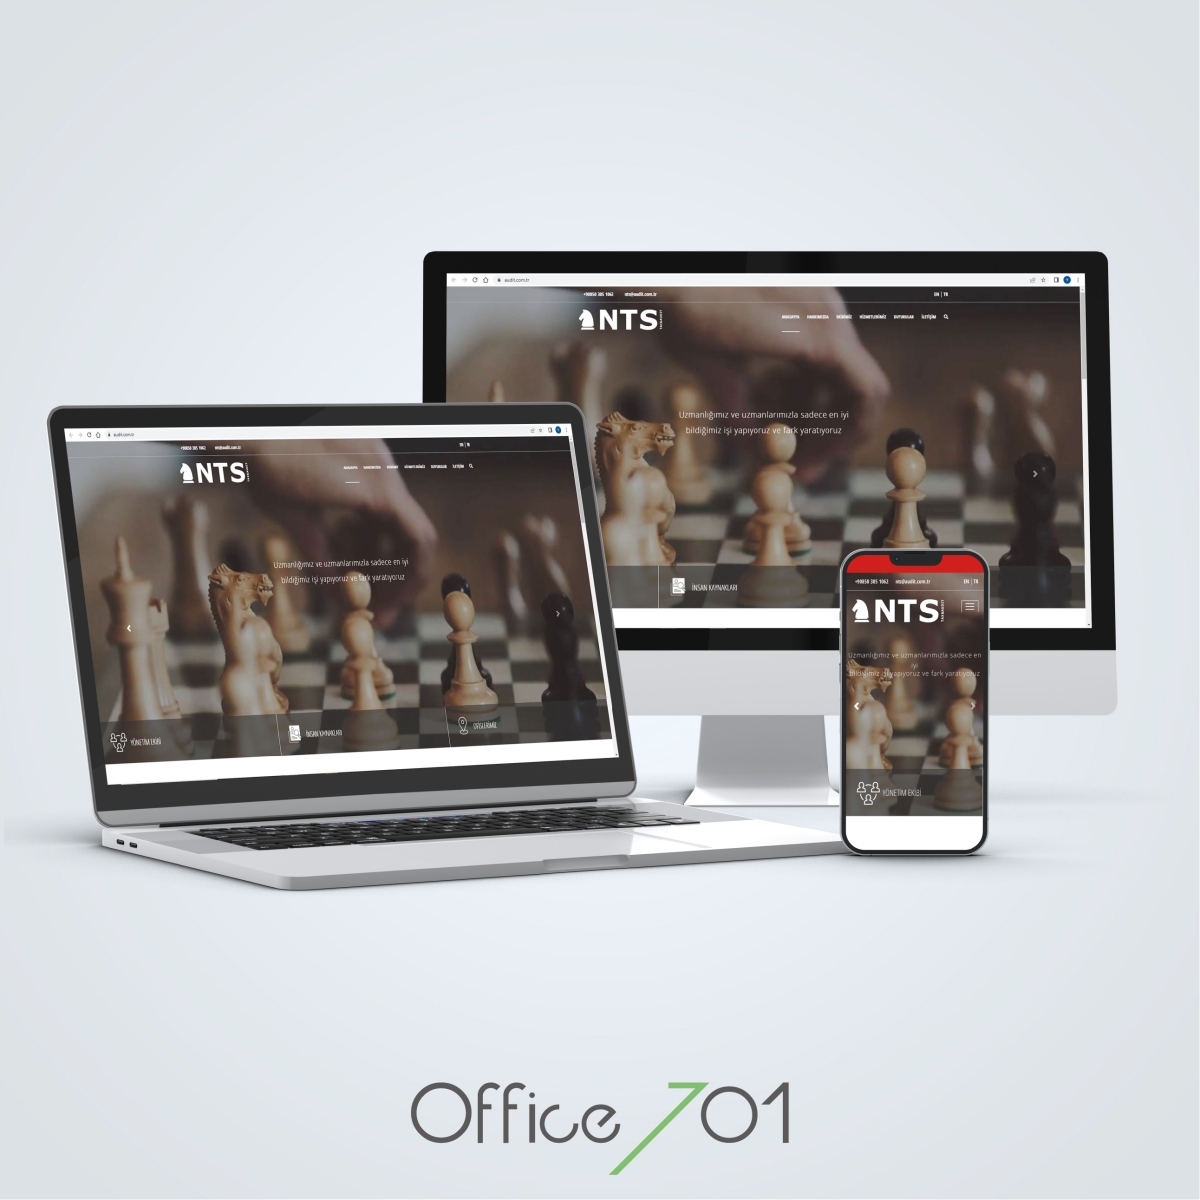 Office701 | Audit (NTS) Web Sitesi